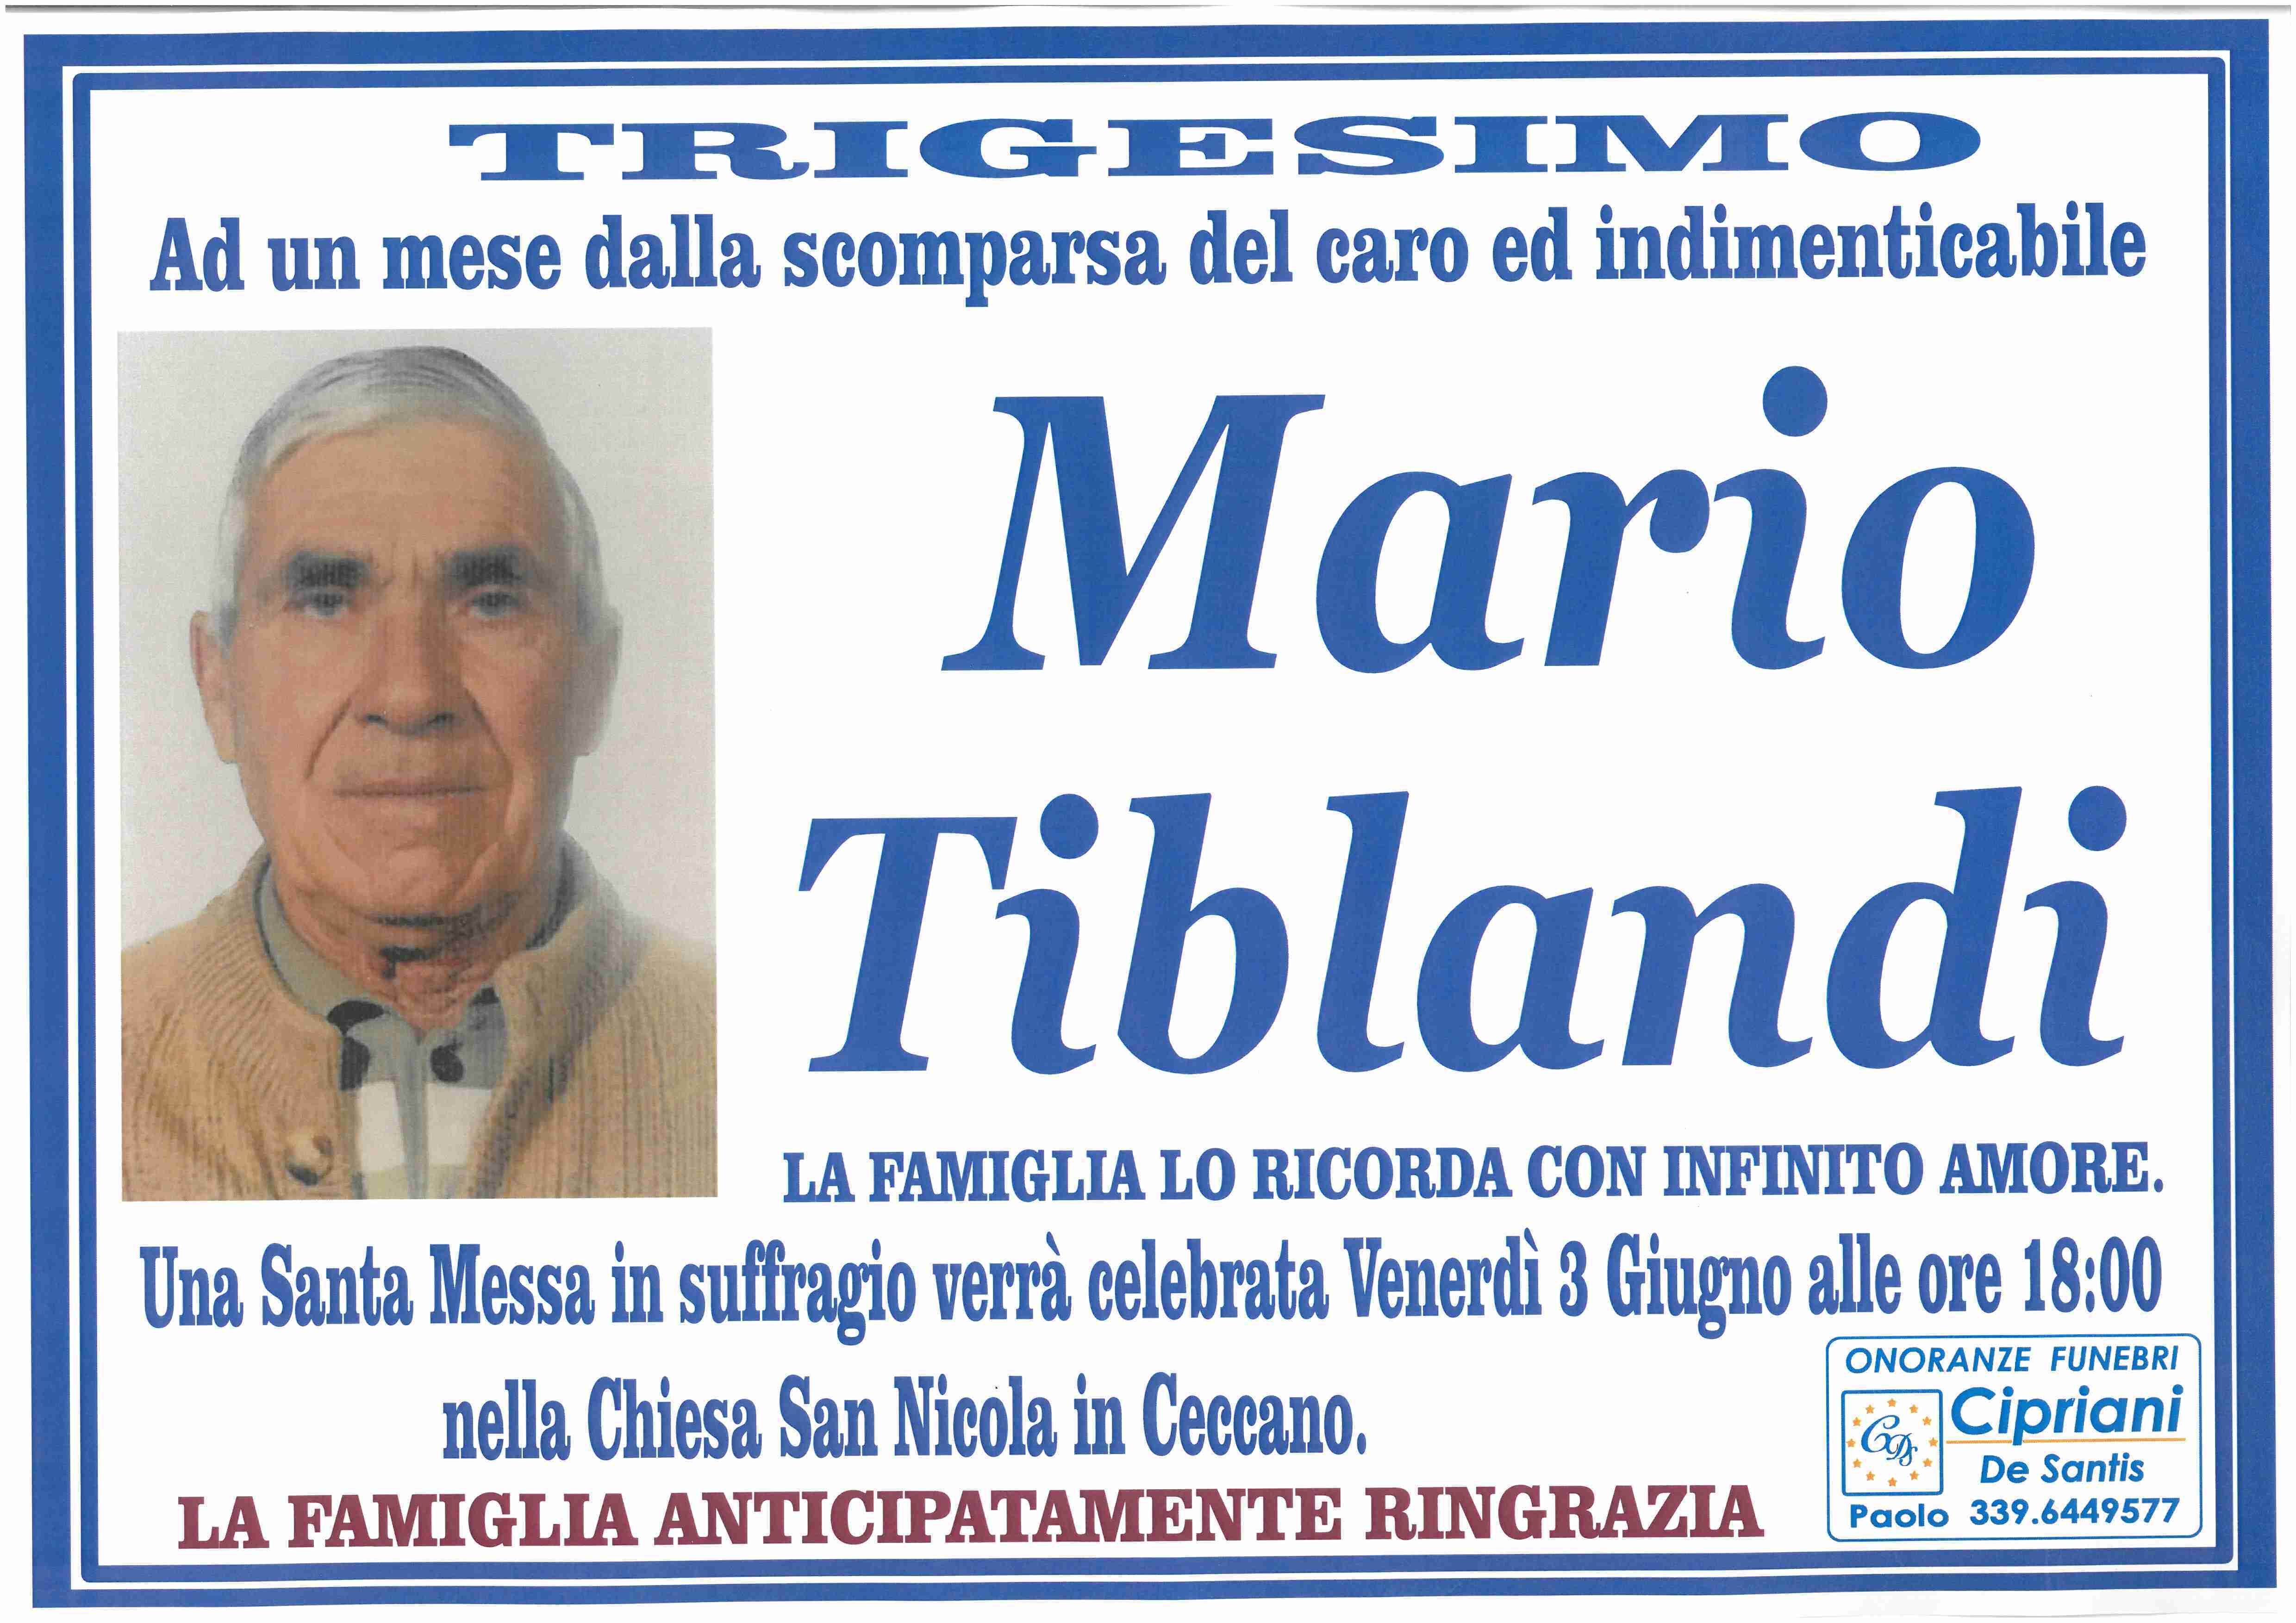 Mario Tiblandi